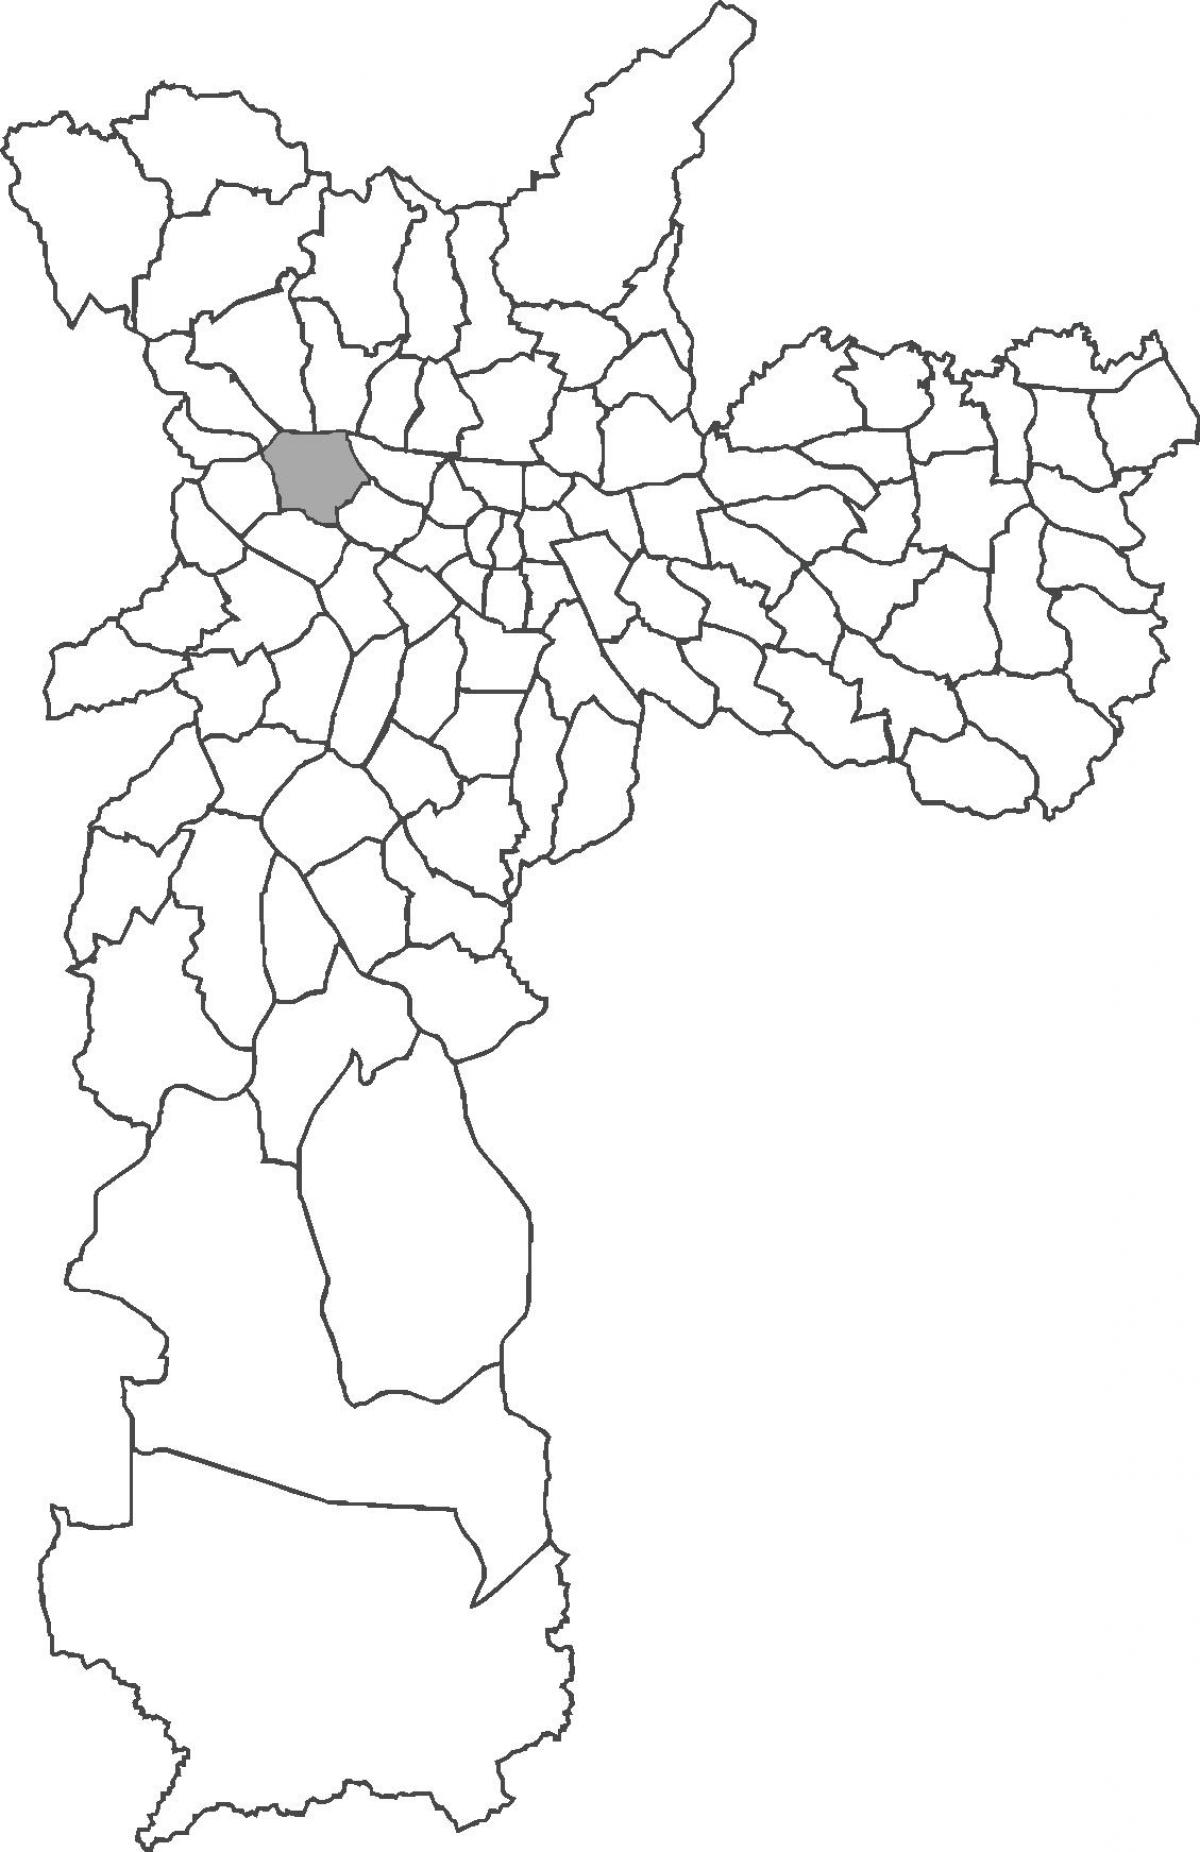 რუკა Lapa უბანი